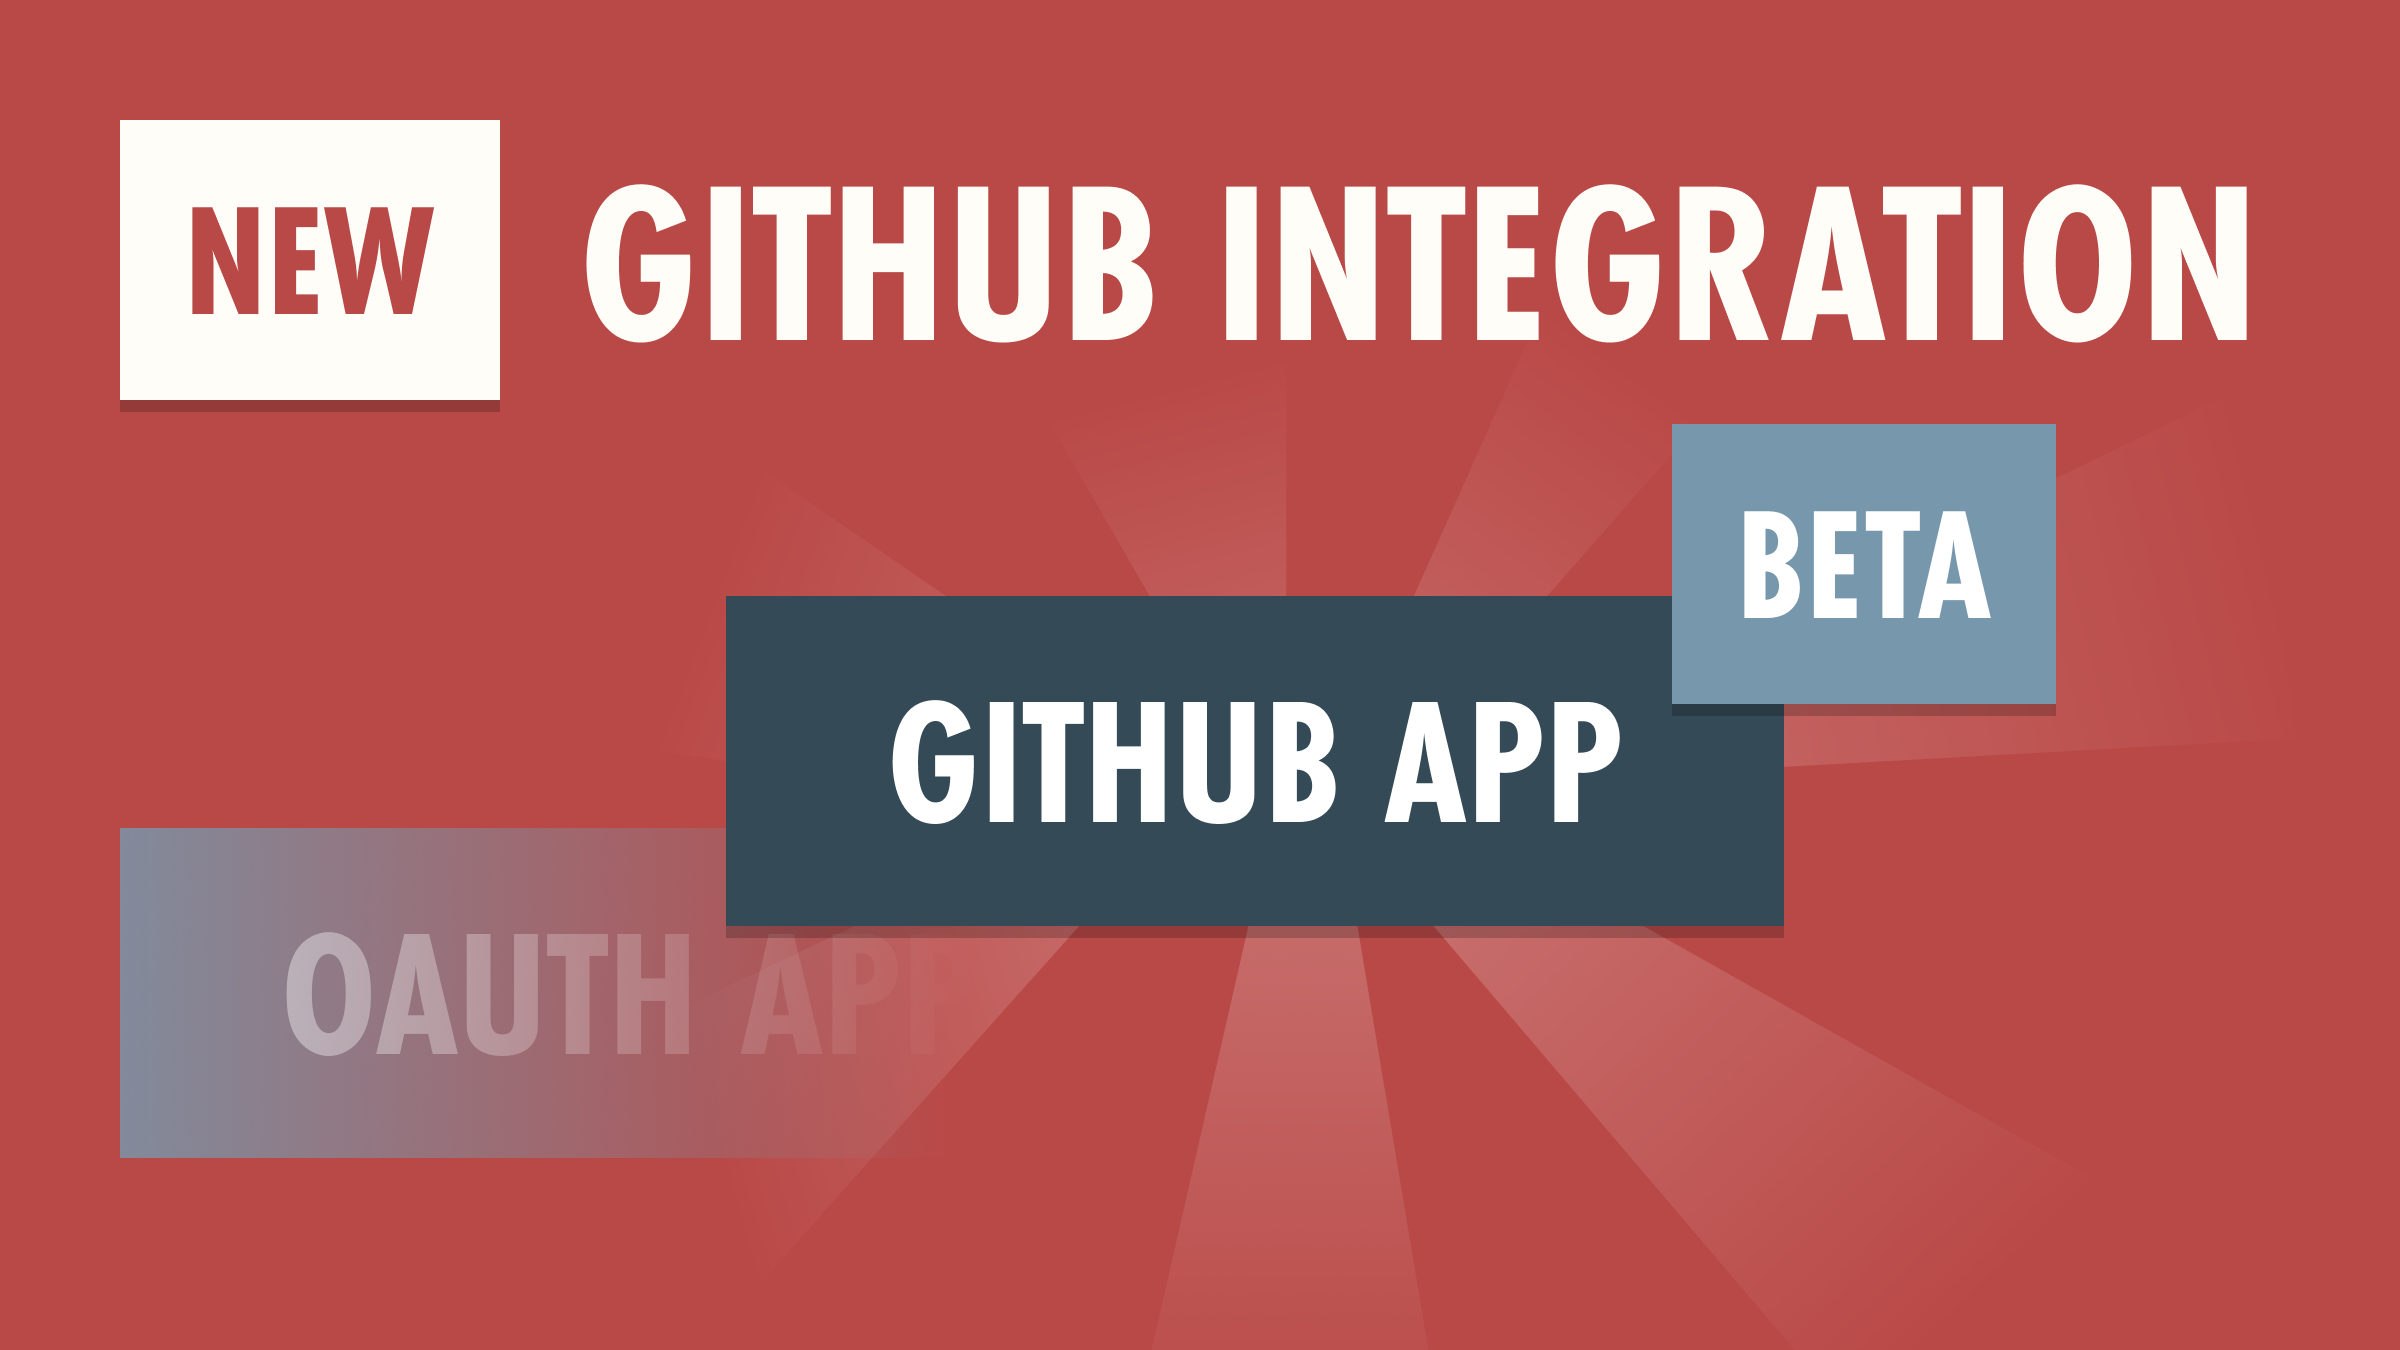 New Github Integration (Beta)